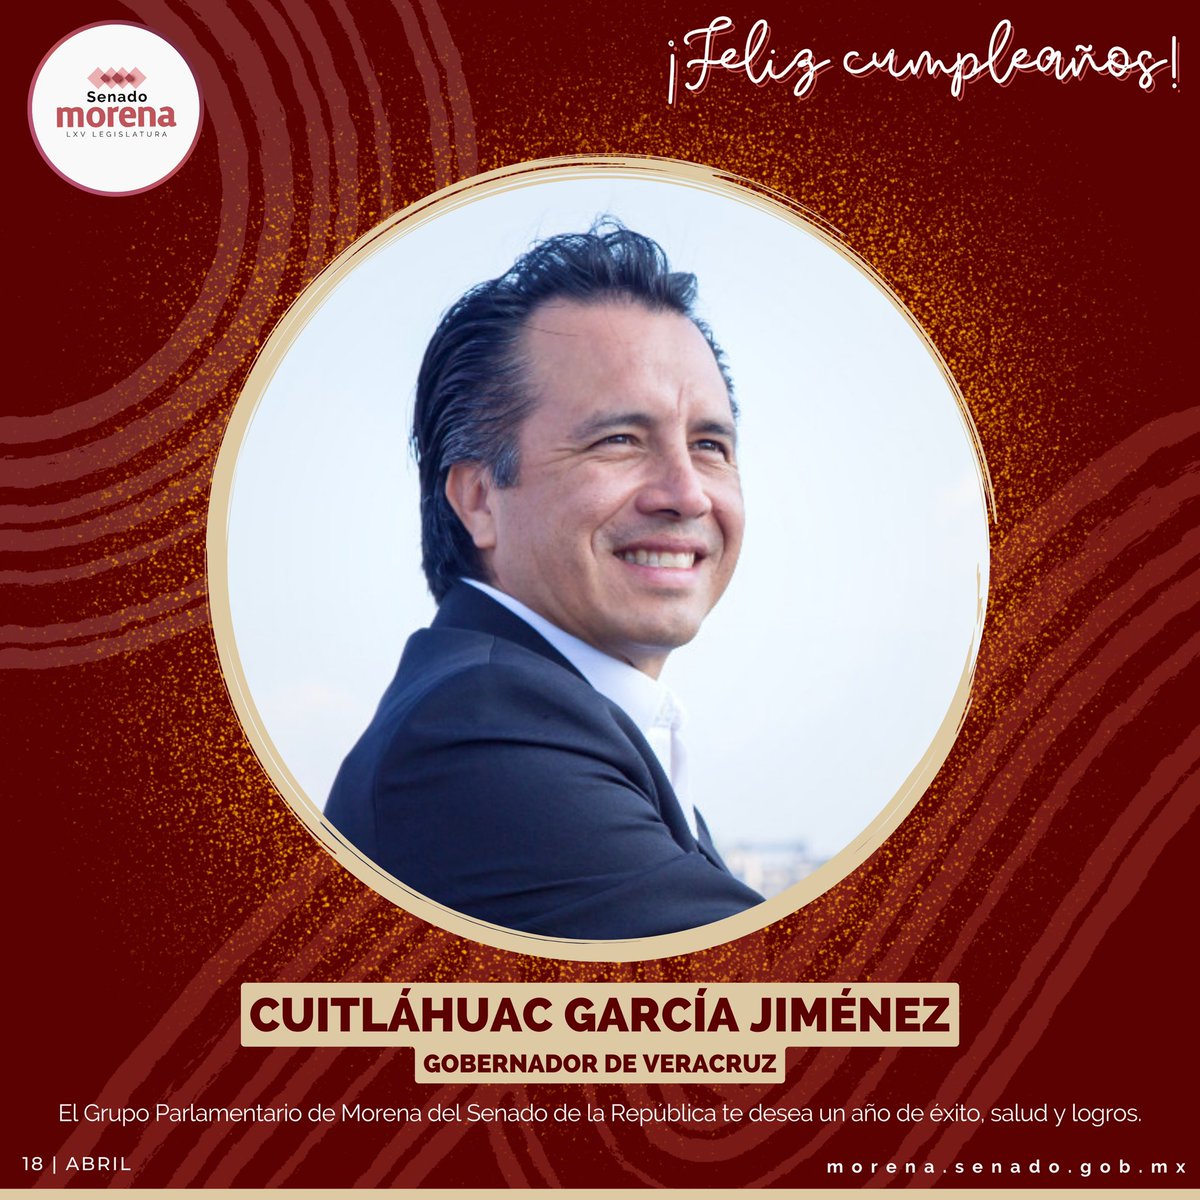 Felicitamos a Cuitláhuac García Jiménez, gobernador de Veracruz y destacado ingeniero, le deseamos que tenga dicha siempre y disfrute este día al lado de su familia.